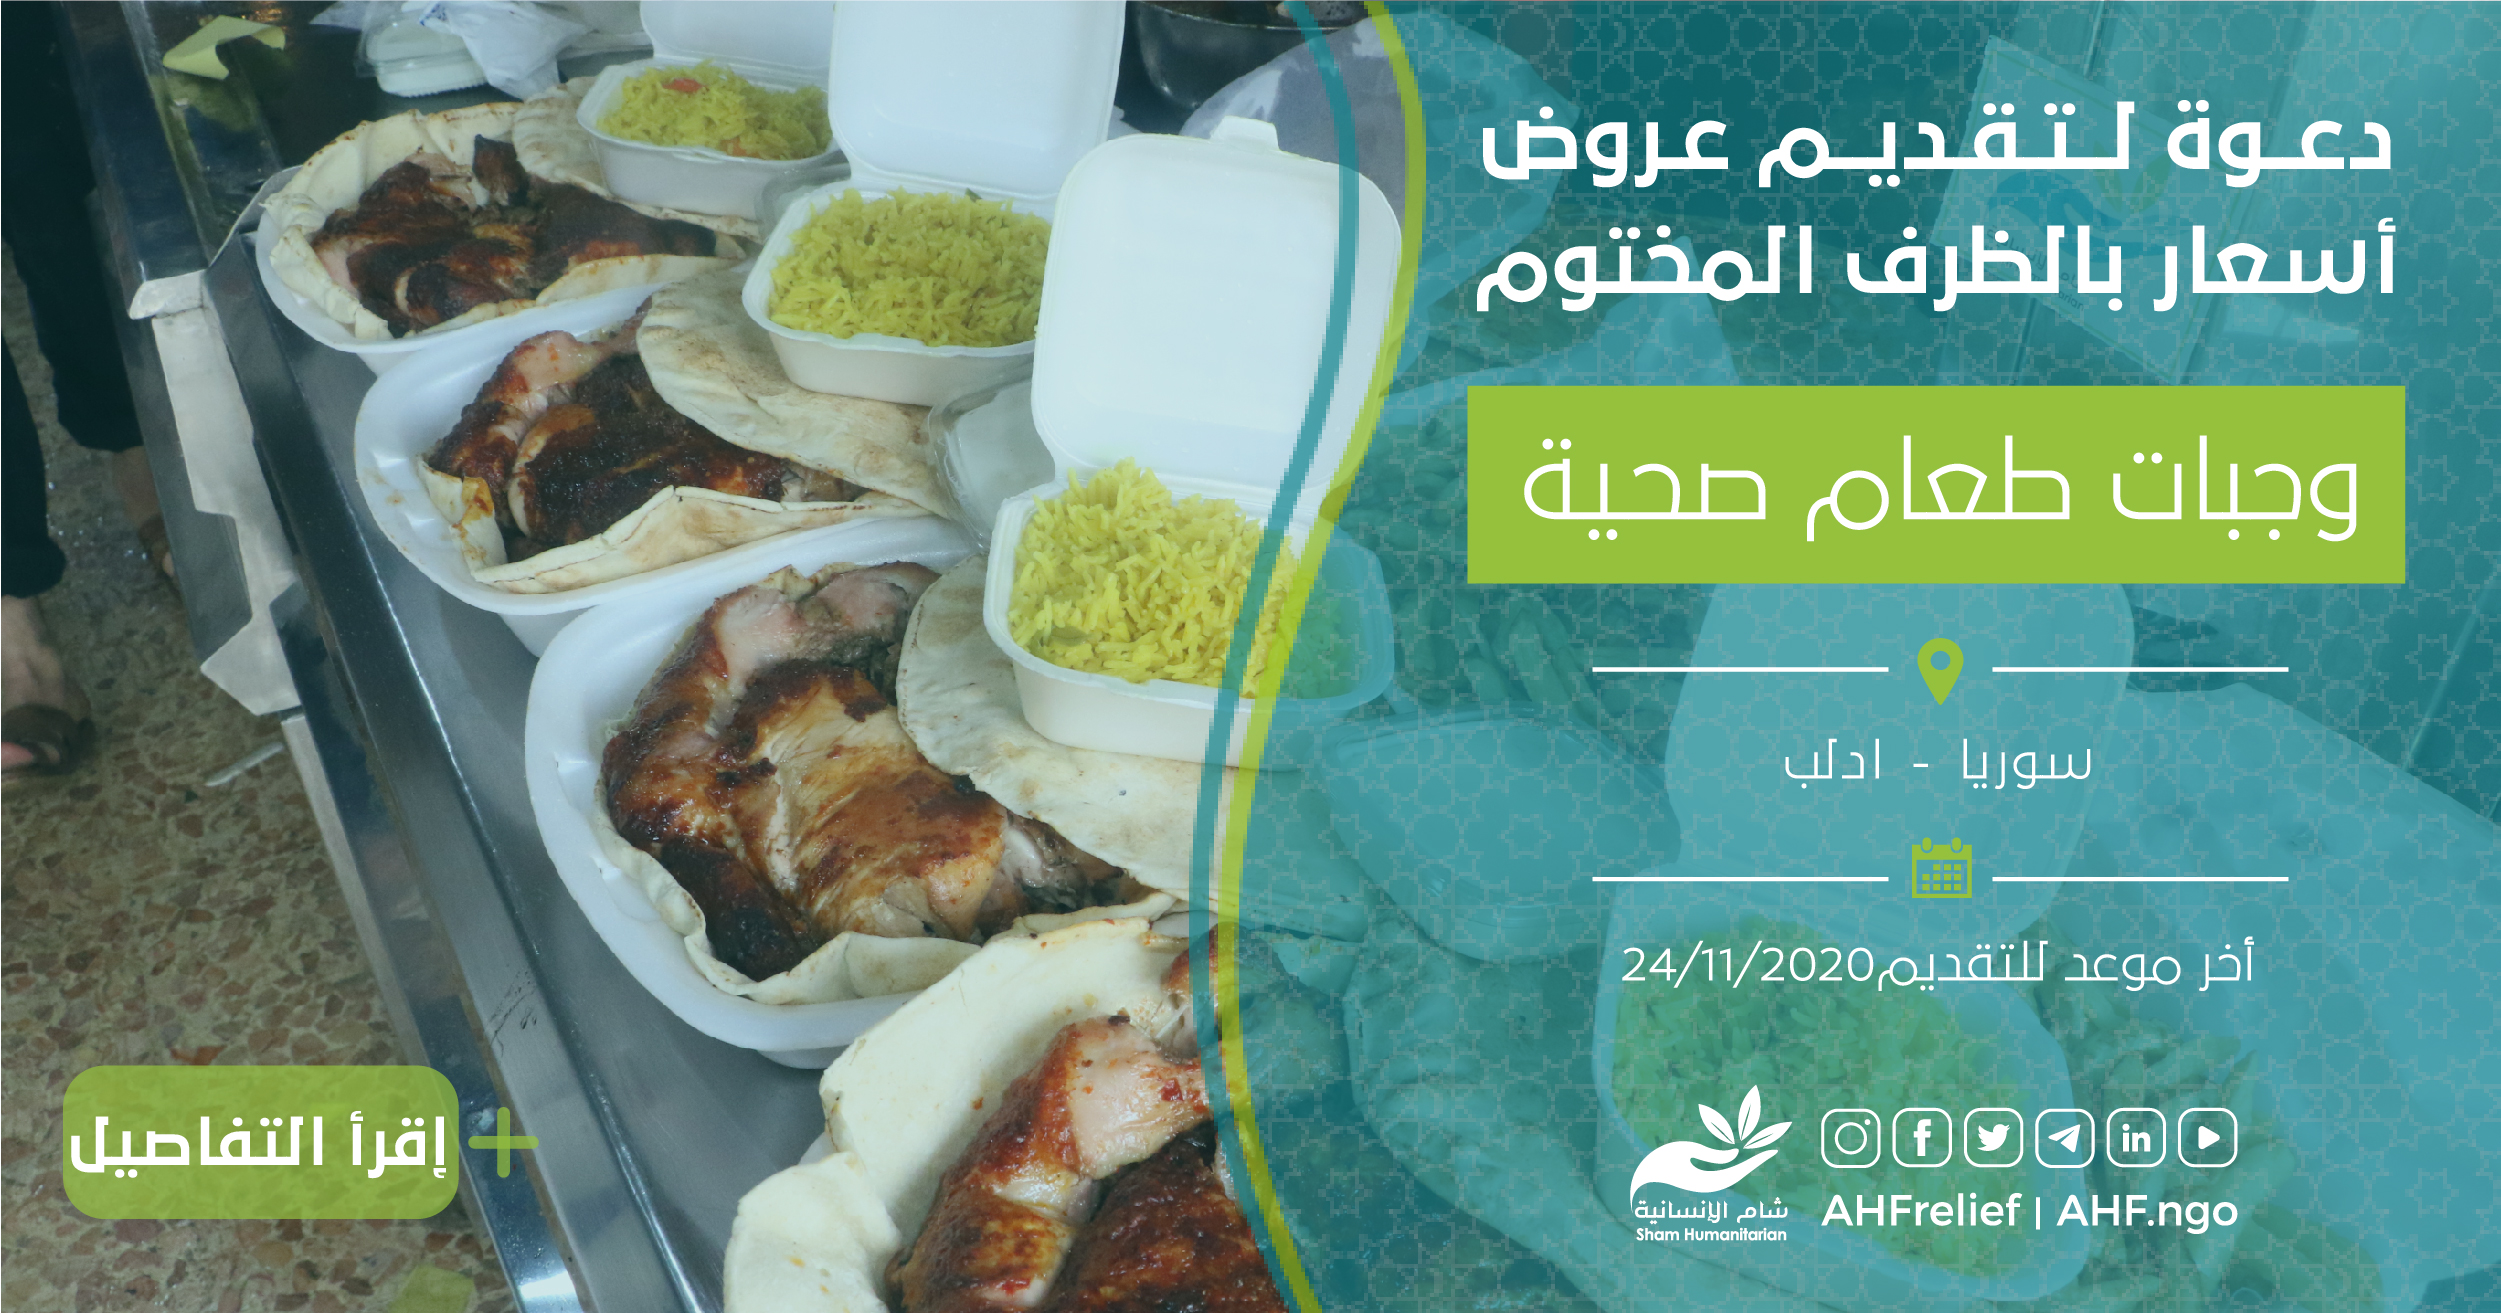 اعلان مناقصة تقديم عروض اسعار وجبات طعام صحية مؤسسة الشام الإنسانية